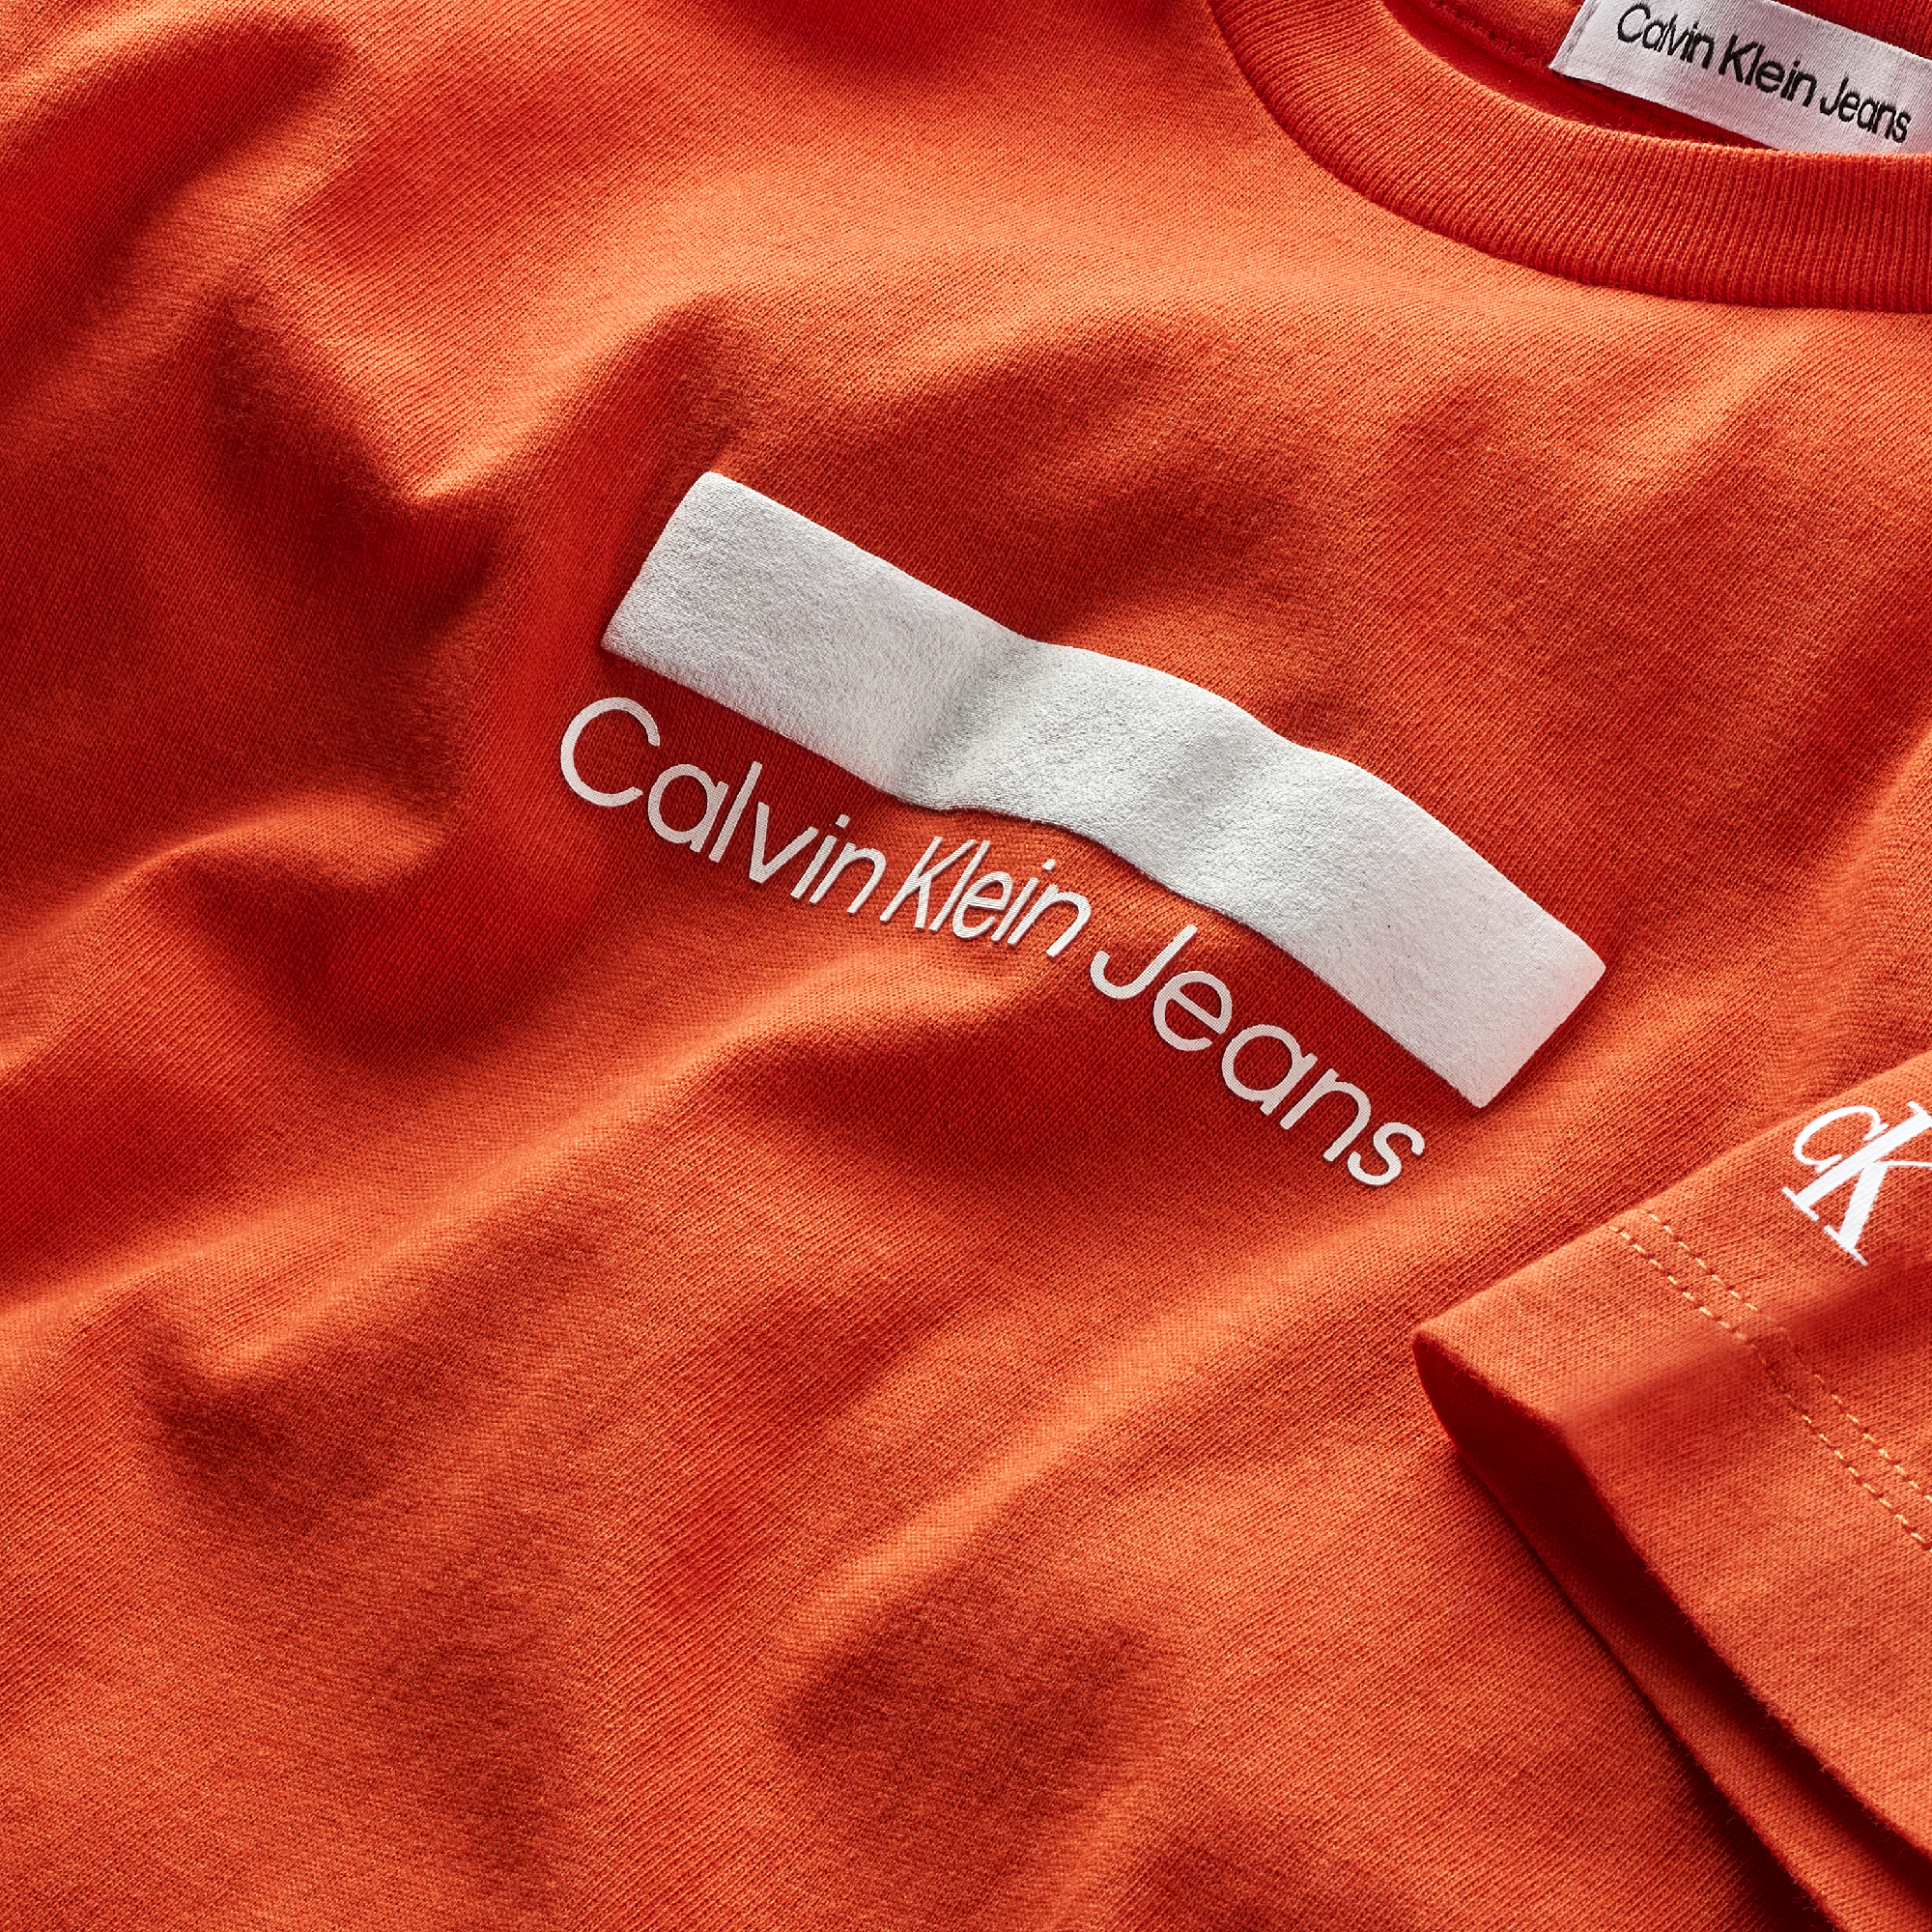 Jongens SMALL BLOCK LOGO T-SHIRT van Calvin Klein in de kleur Coral Orange in maat 176.